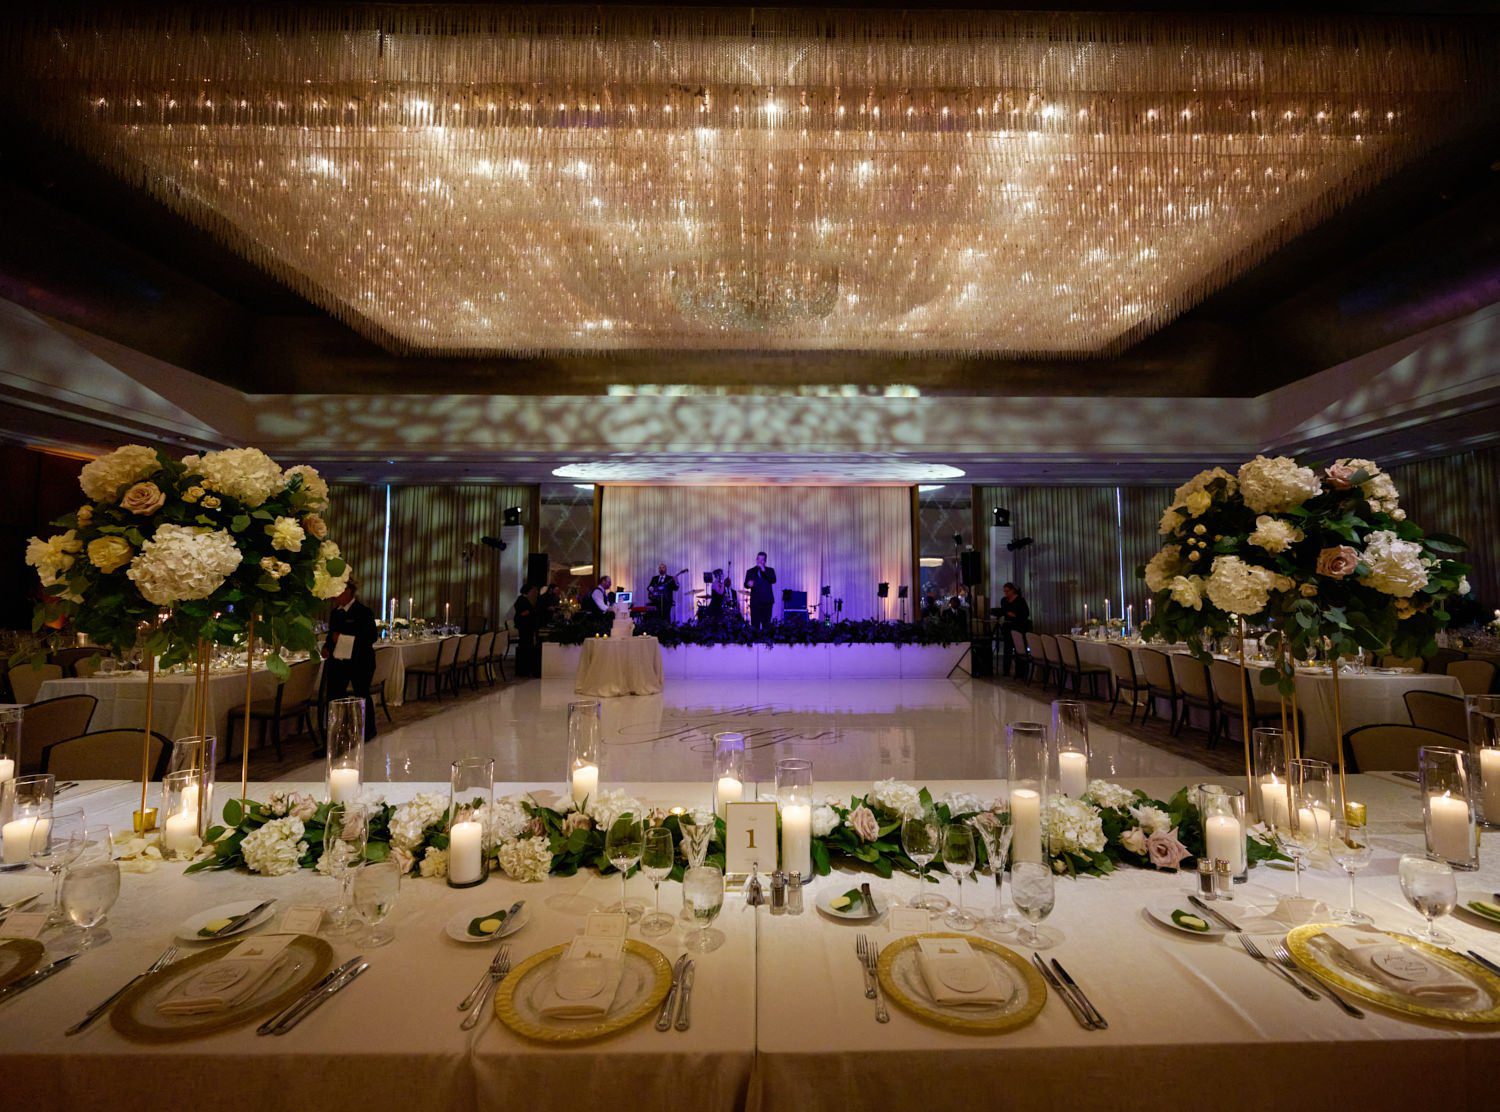 chicago ritz Carlton wedding photography reception ballroom decor and details